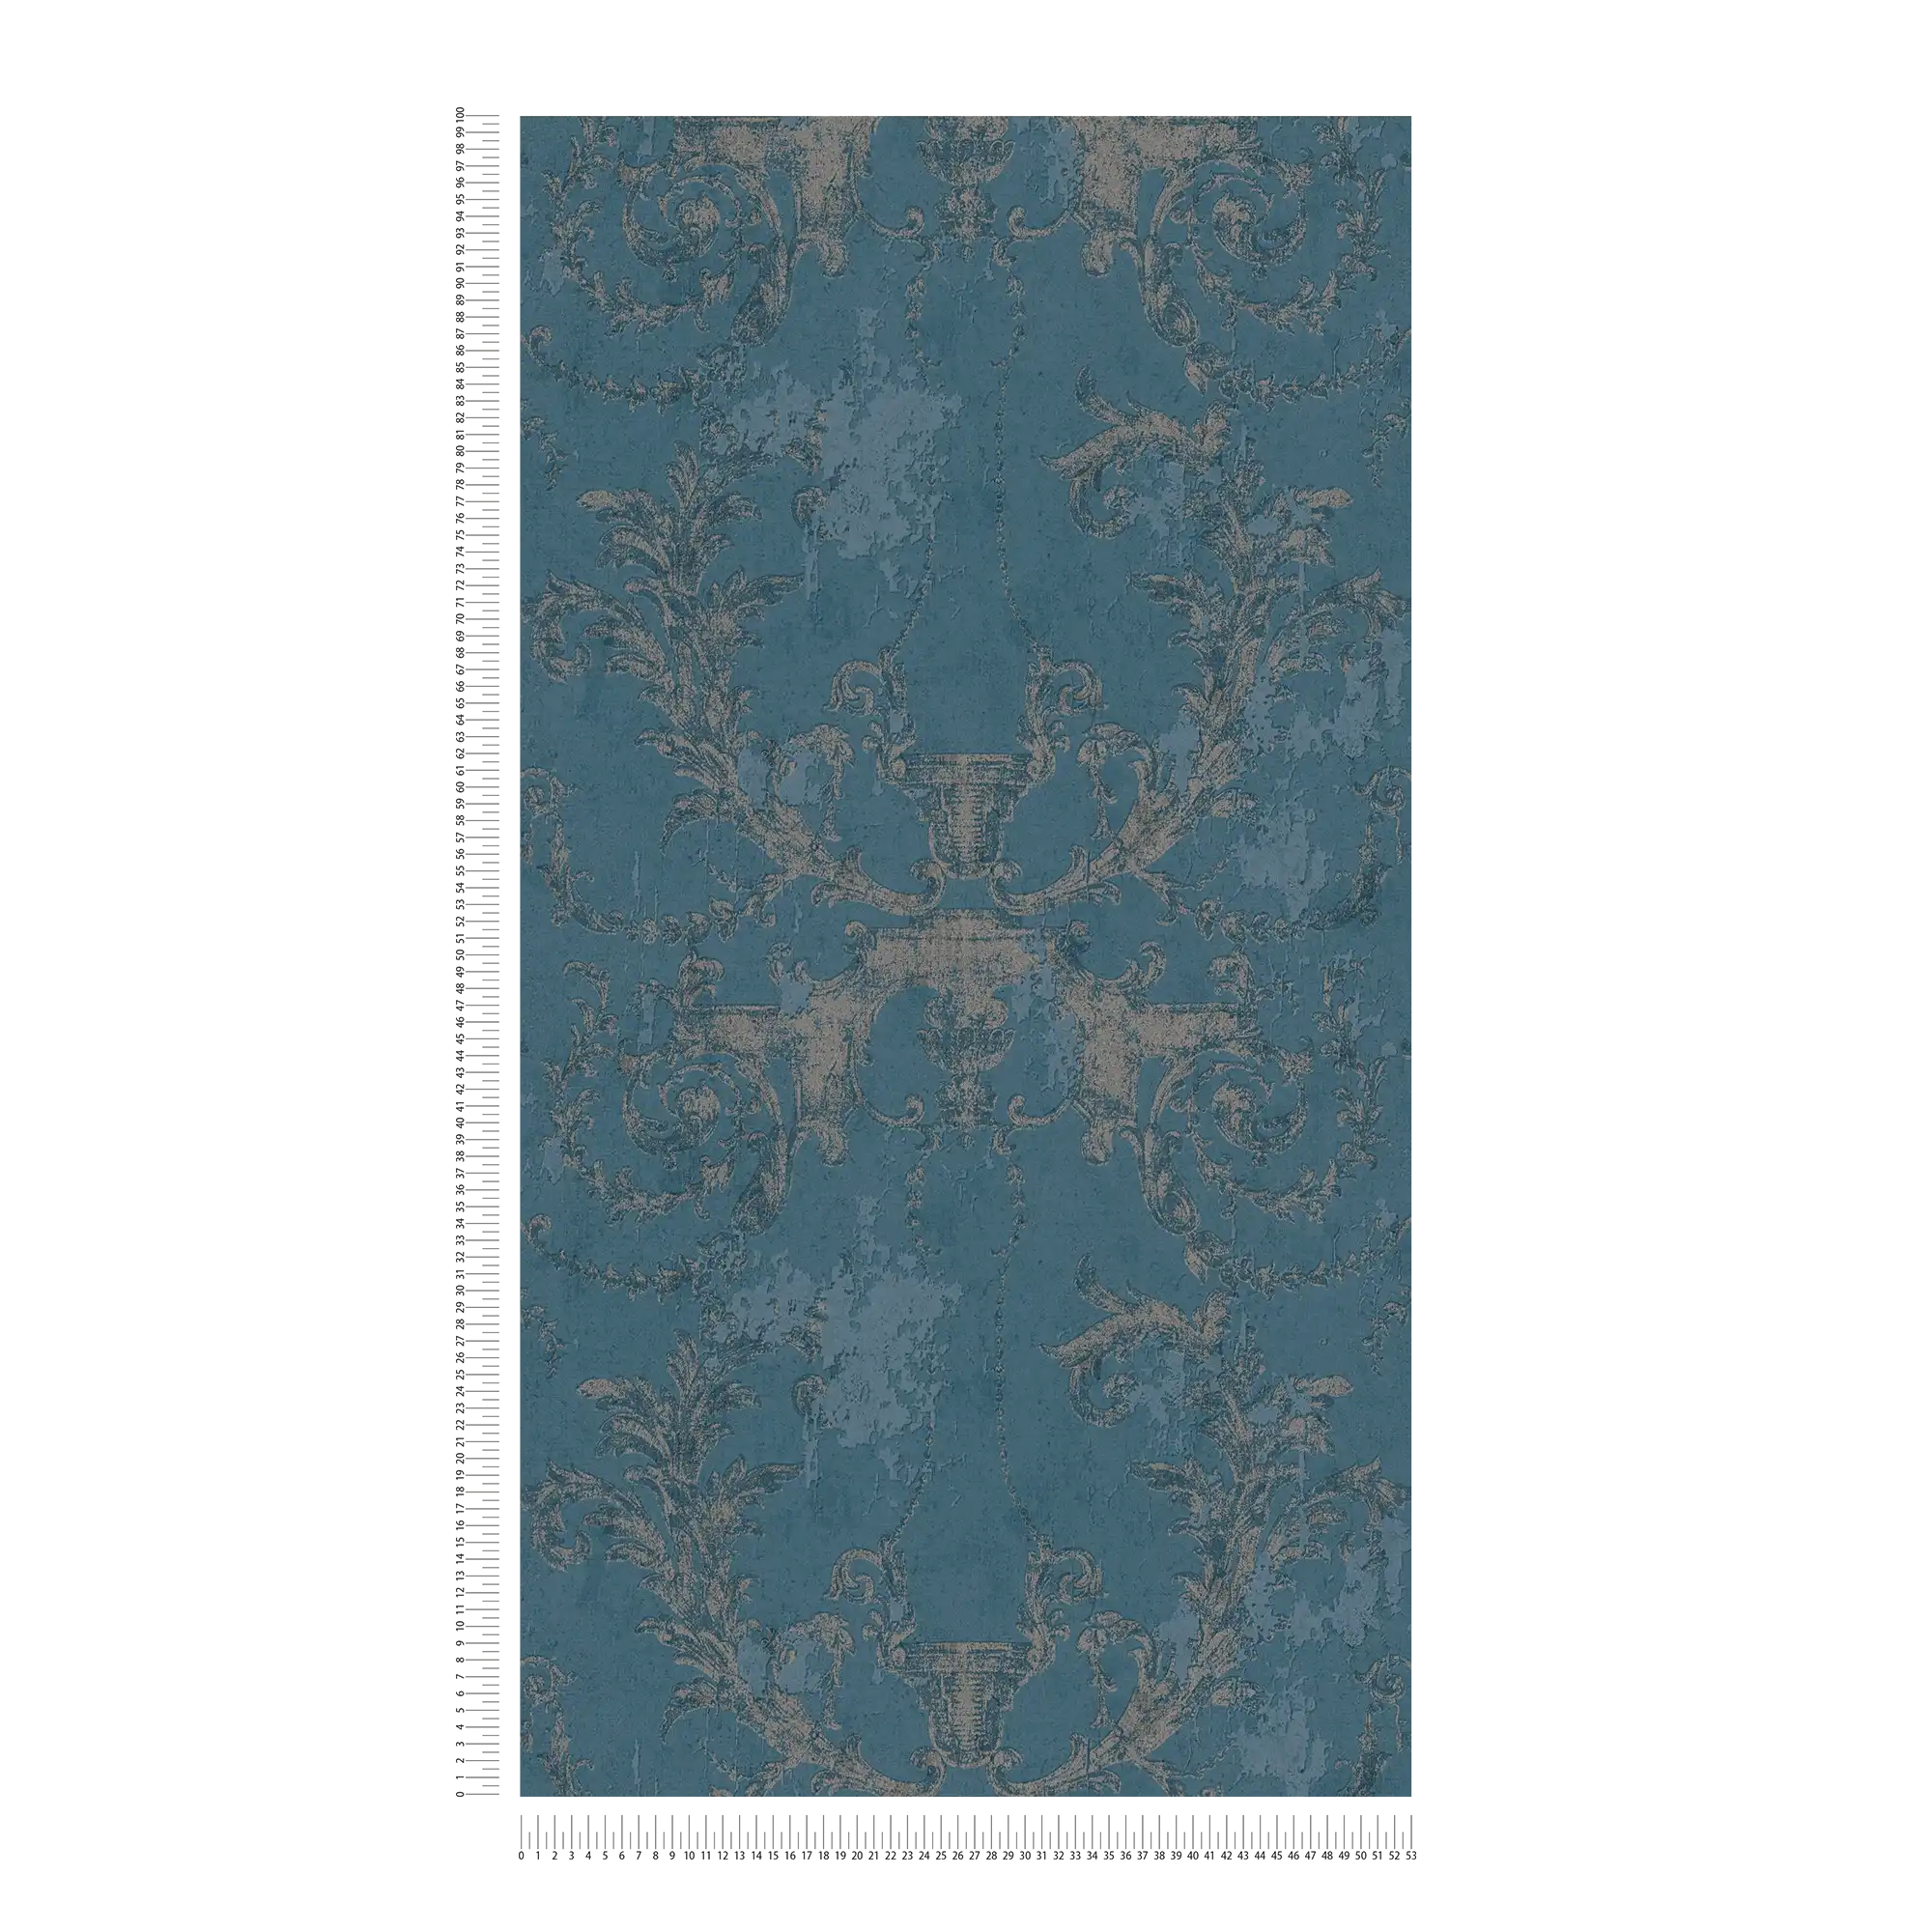             Ornamenteel behang vintage stijl & rustiek - blauw, zilver
        